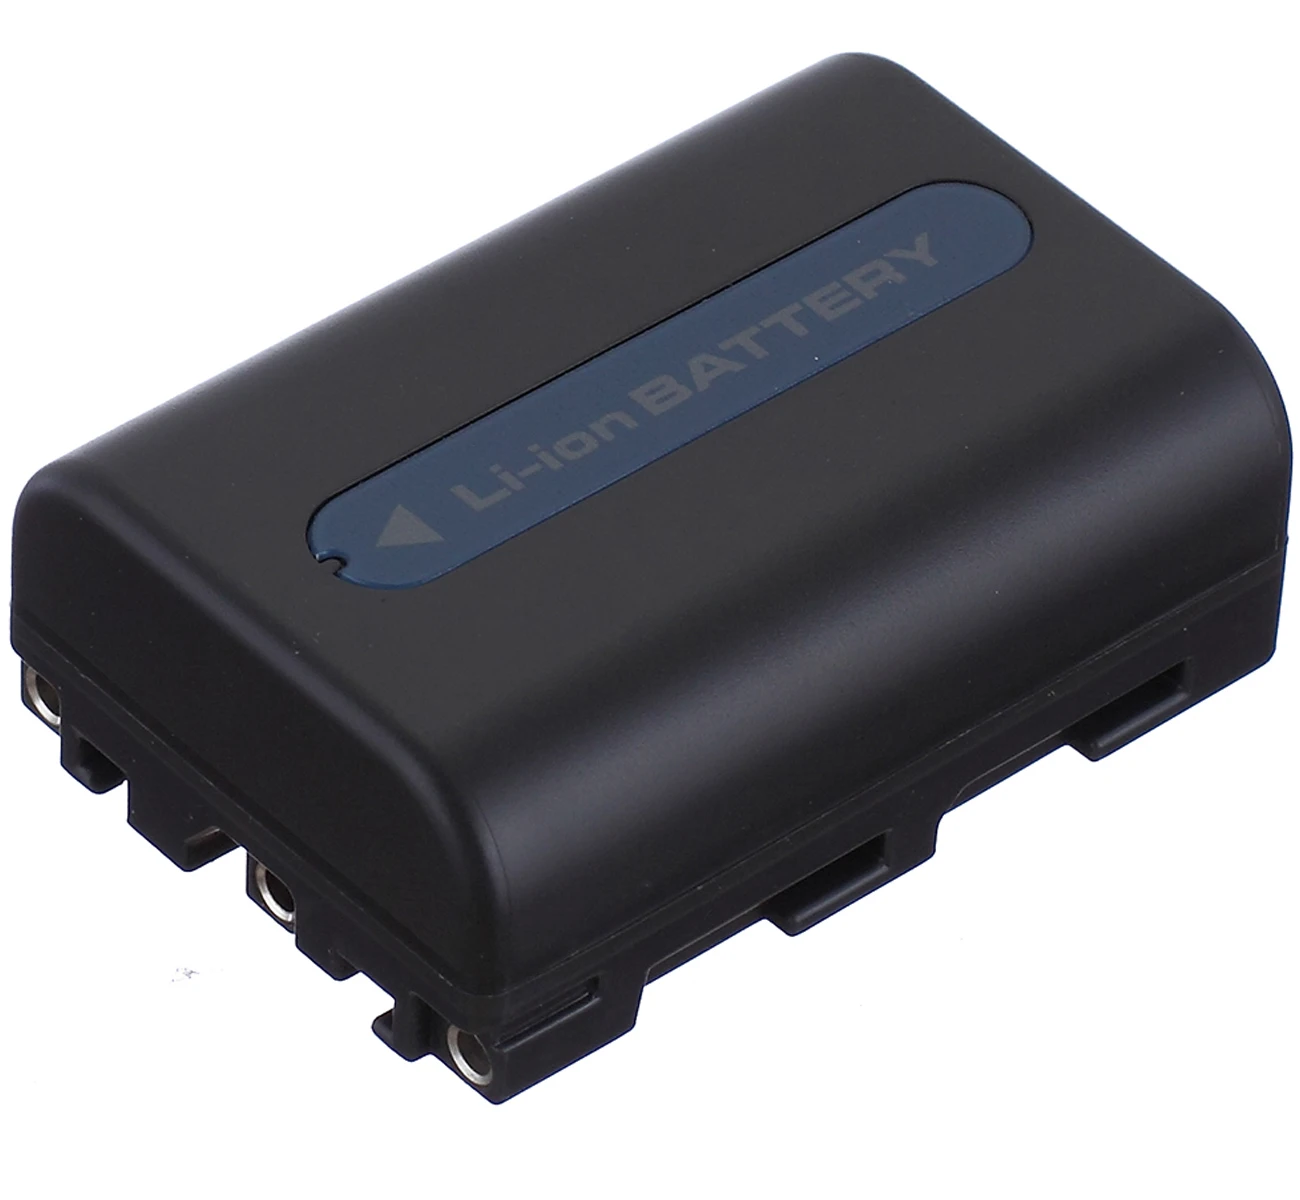 

Battery Pack for Sony DCR-TRV20, DCR-TRV30, DCR-TRV40, DCR-TRV50, DCR-TRV60, DCR-TRV70, DCR-TRV75, DCR-TRV80 Handycam Camcorder